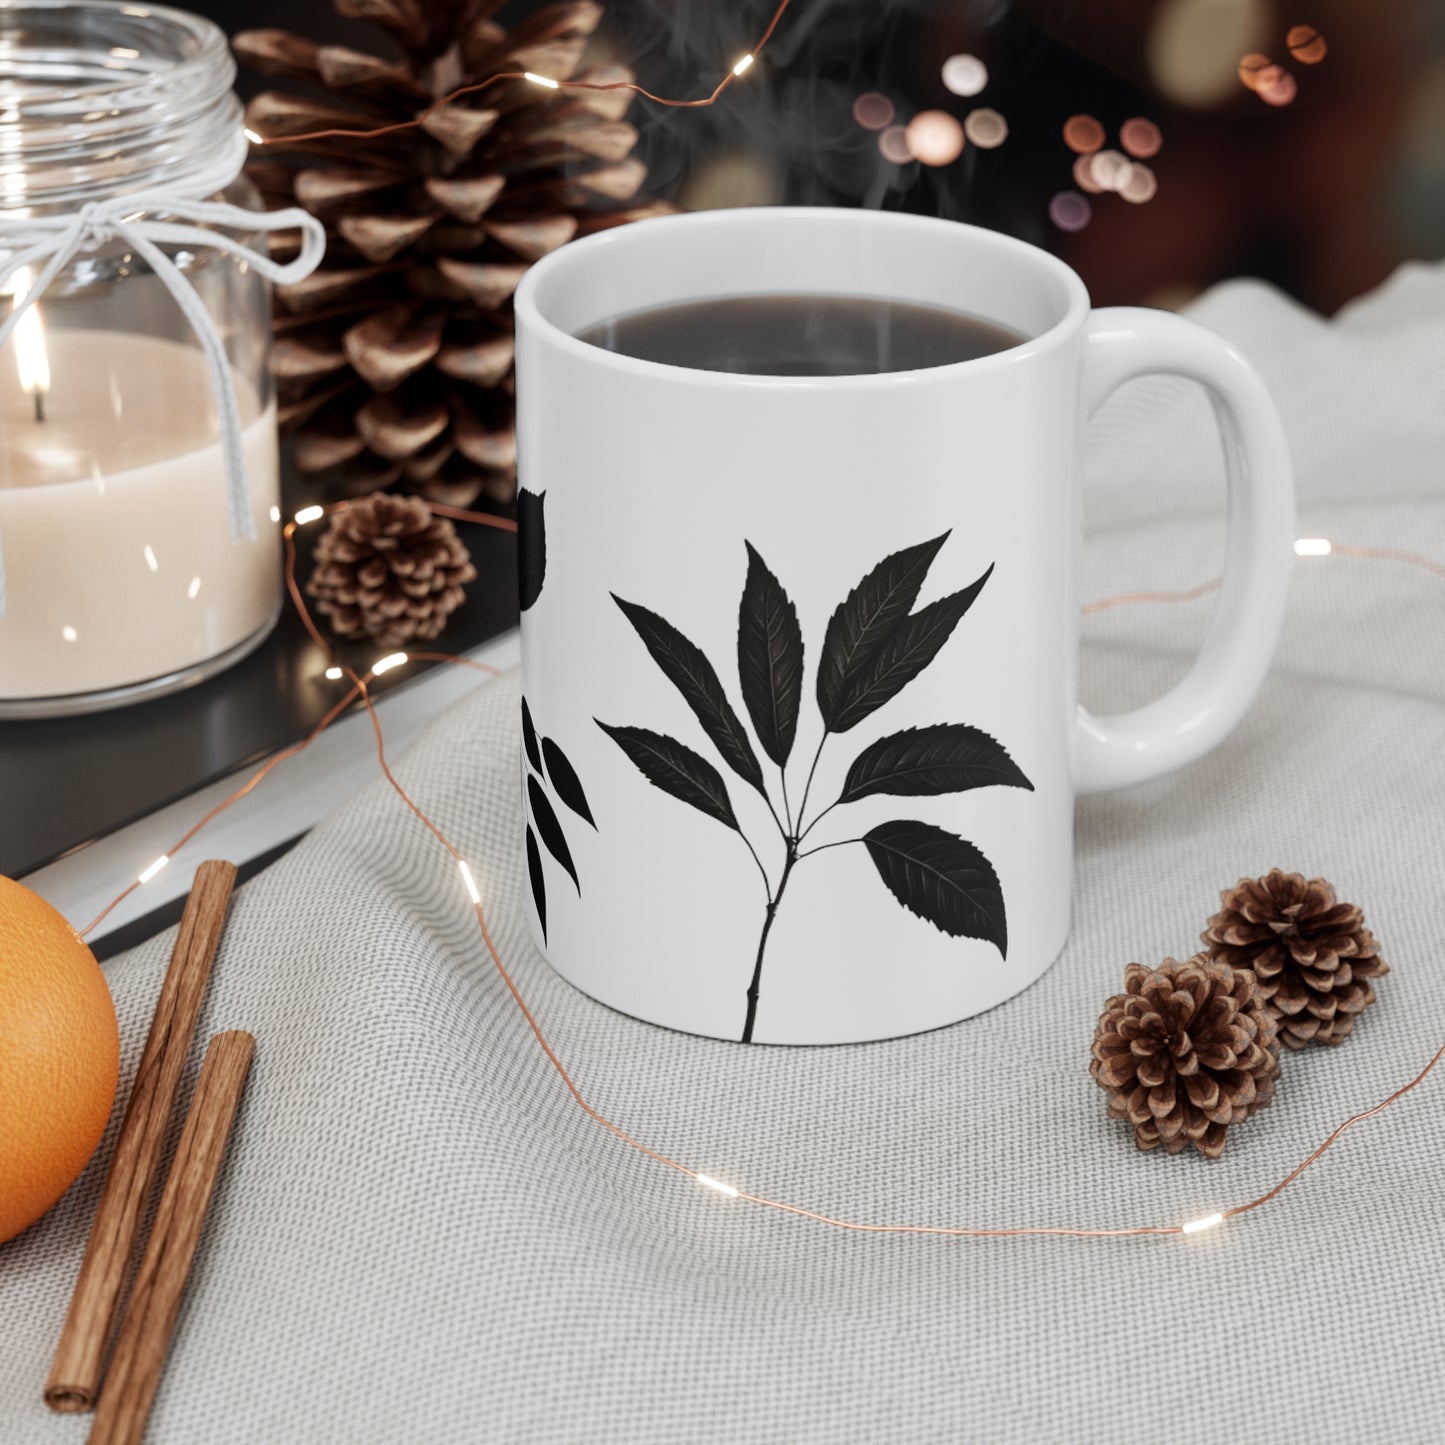 Black and White Leaves Mug - Ceramic Coffee Mug 11oz